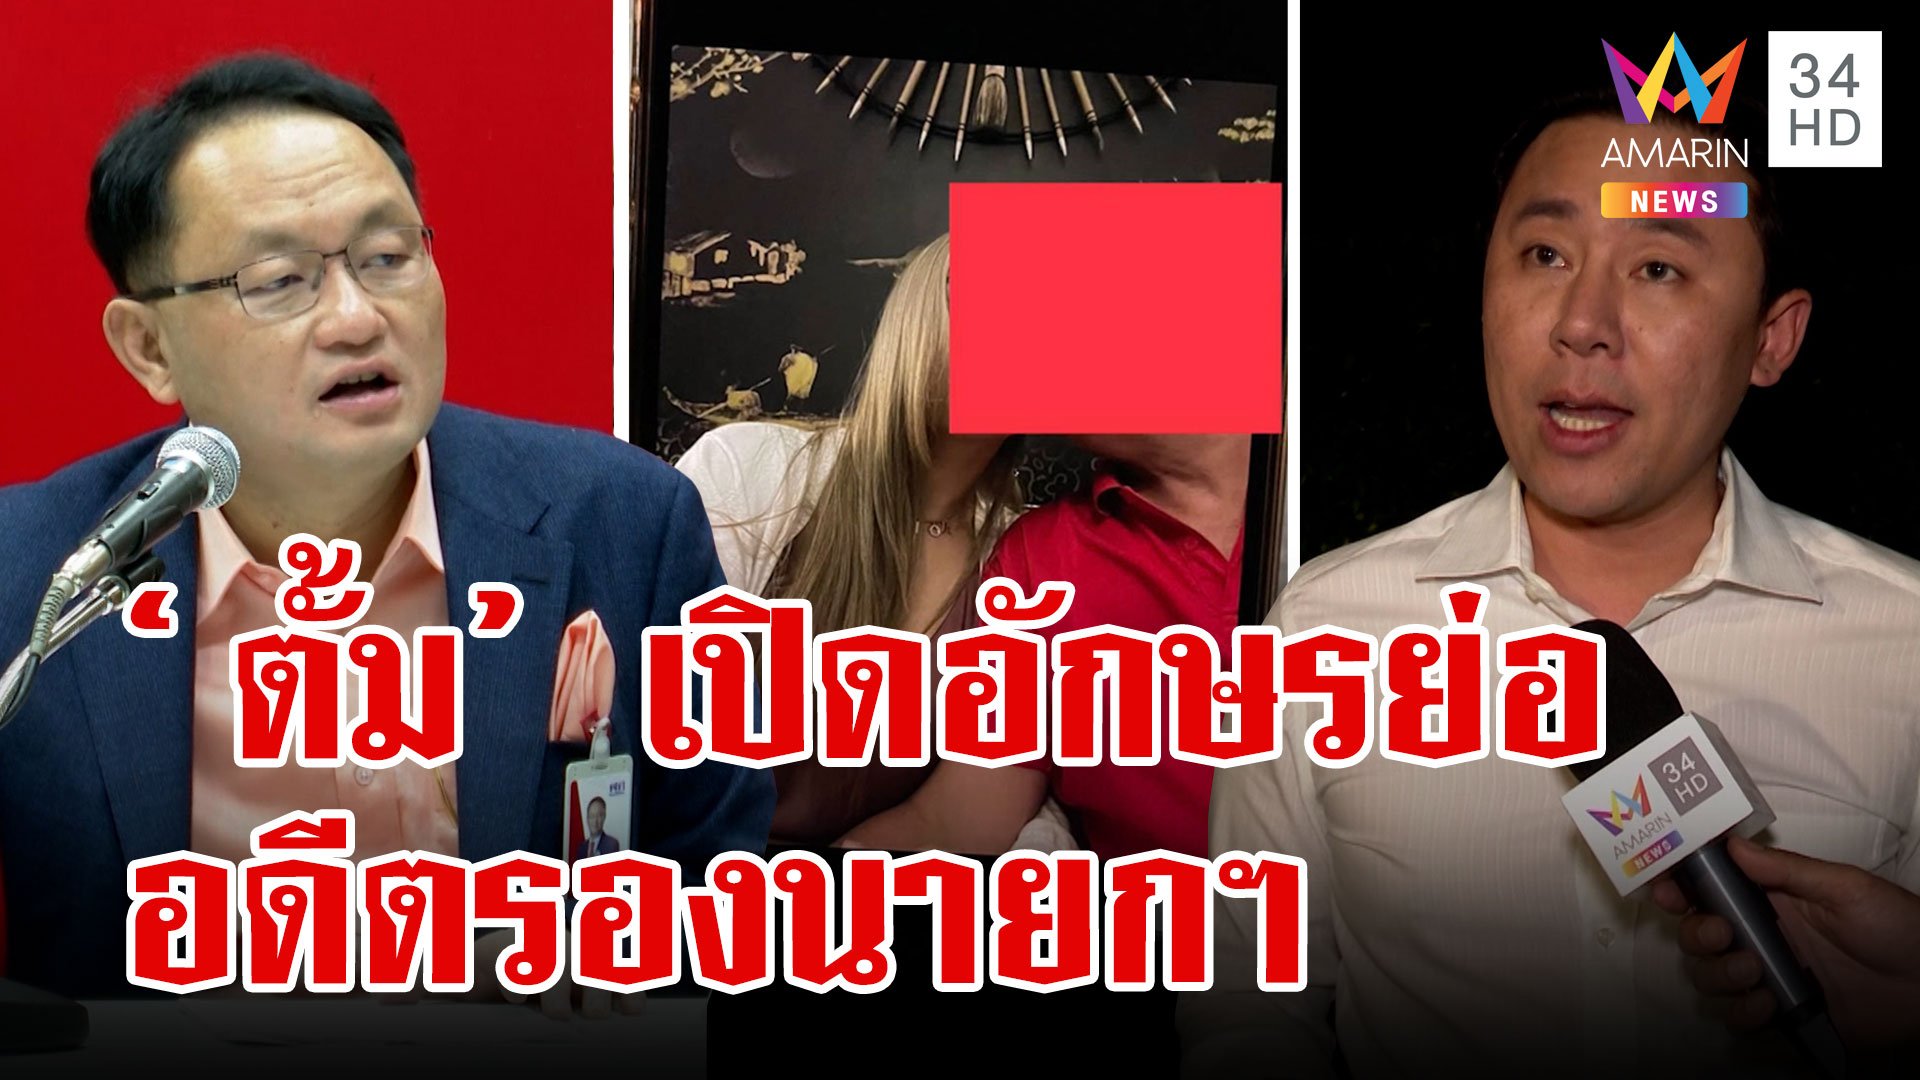 "ทนายตั้ม" เปิดอักษรย่อ อดีตรองนายกฯ แอบแซ่บเมียชาวบ้าน เพื่อไทยโร่แจง | ทุบโต๊ะข่าว | 8 ม.ค. 66 | AMARIN TVHD34